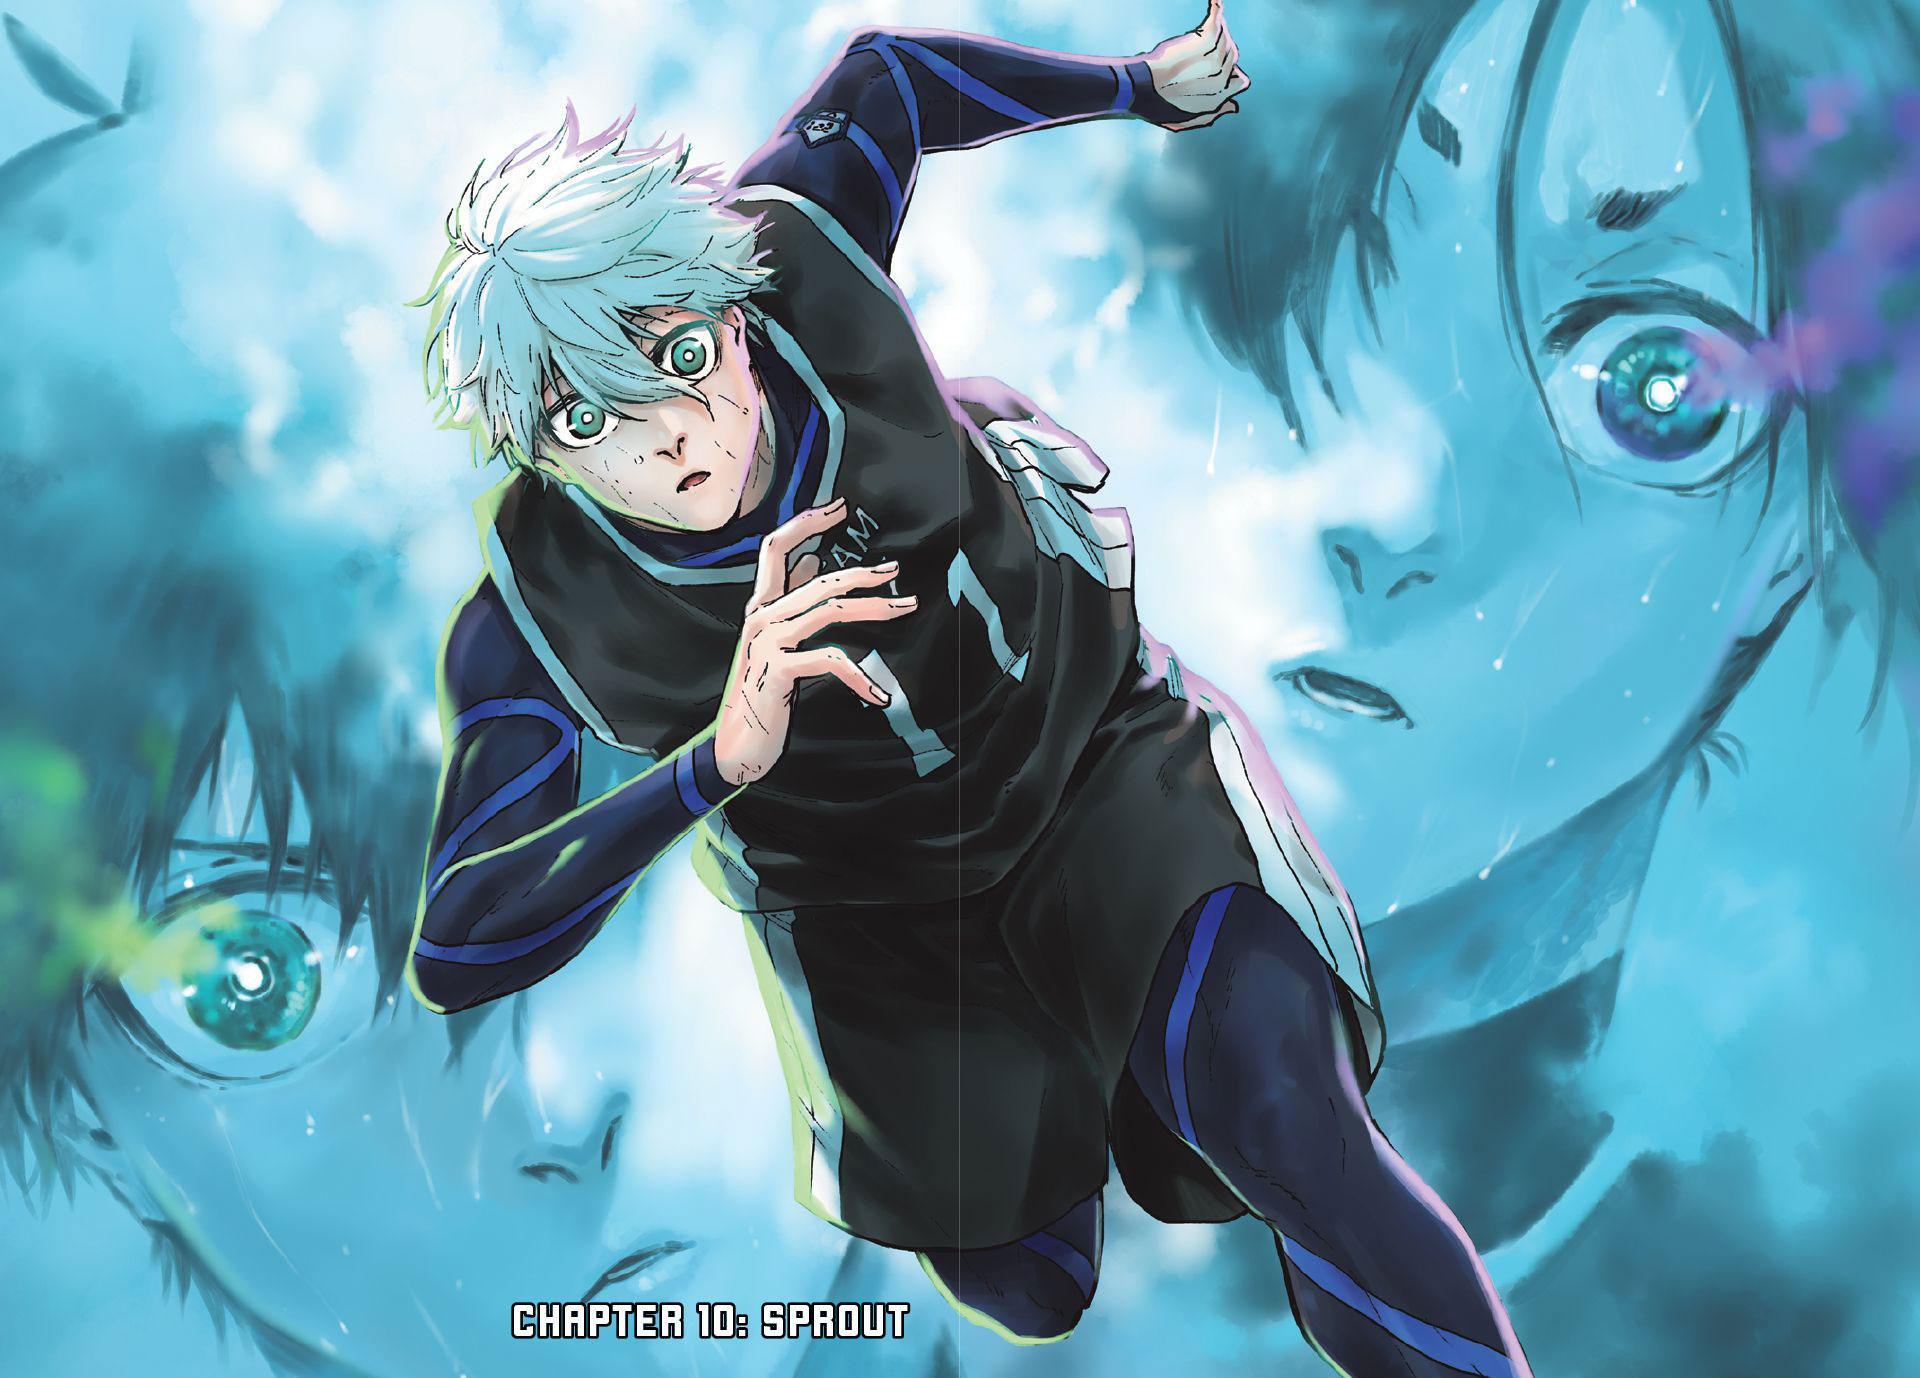 Read Blue Lock: Episode Nagi Chapter 10 - Manganelo